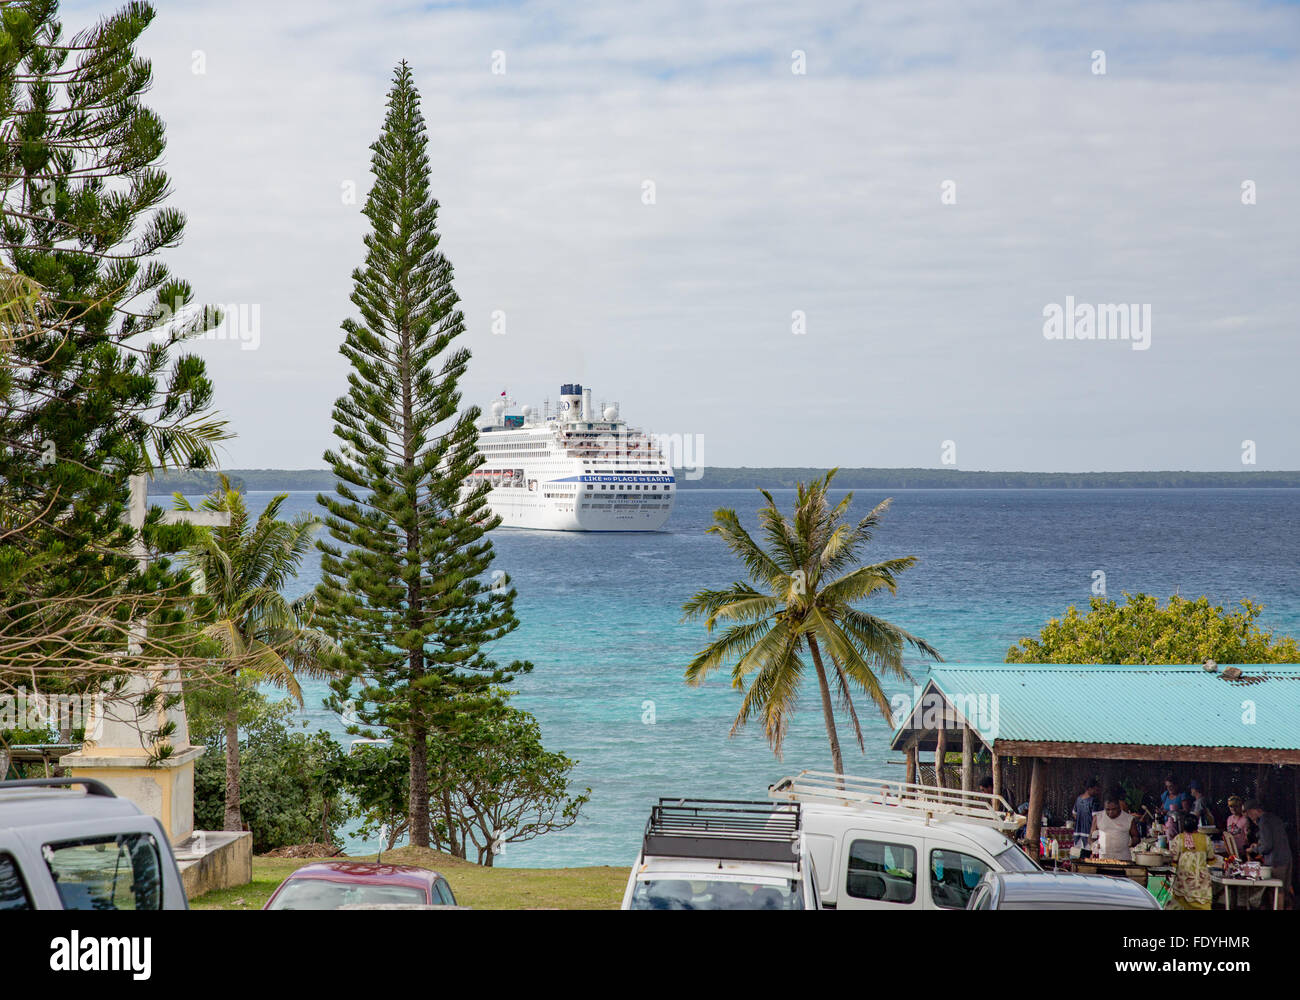 A P&O Cruise Ship at anchor at Lifou Island, New Caledonia Stock Photo